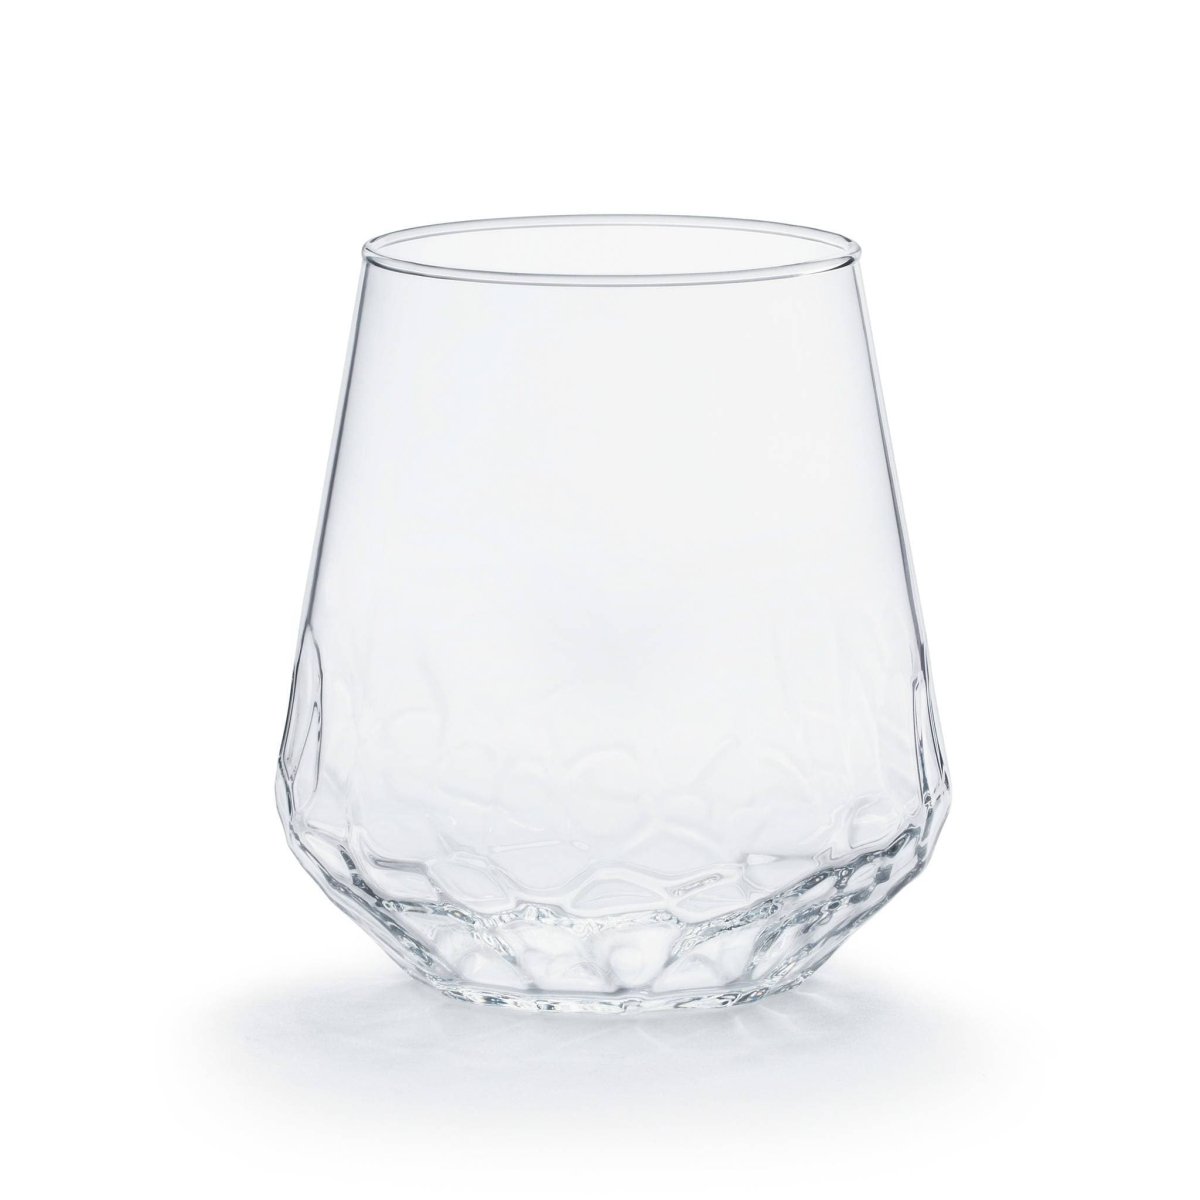 Libbey 217 - Stemless Wine Glass 11.75 oz.